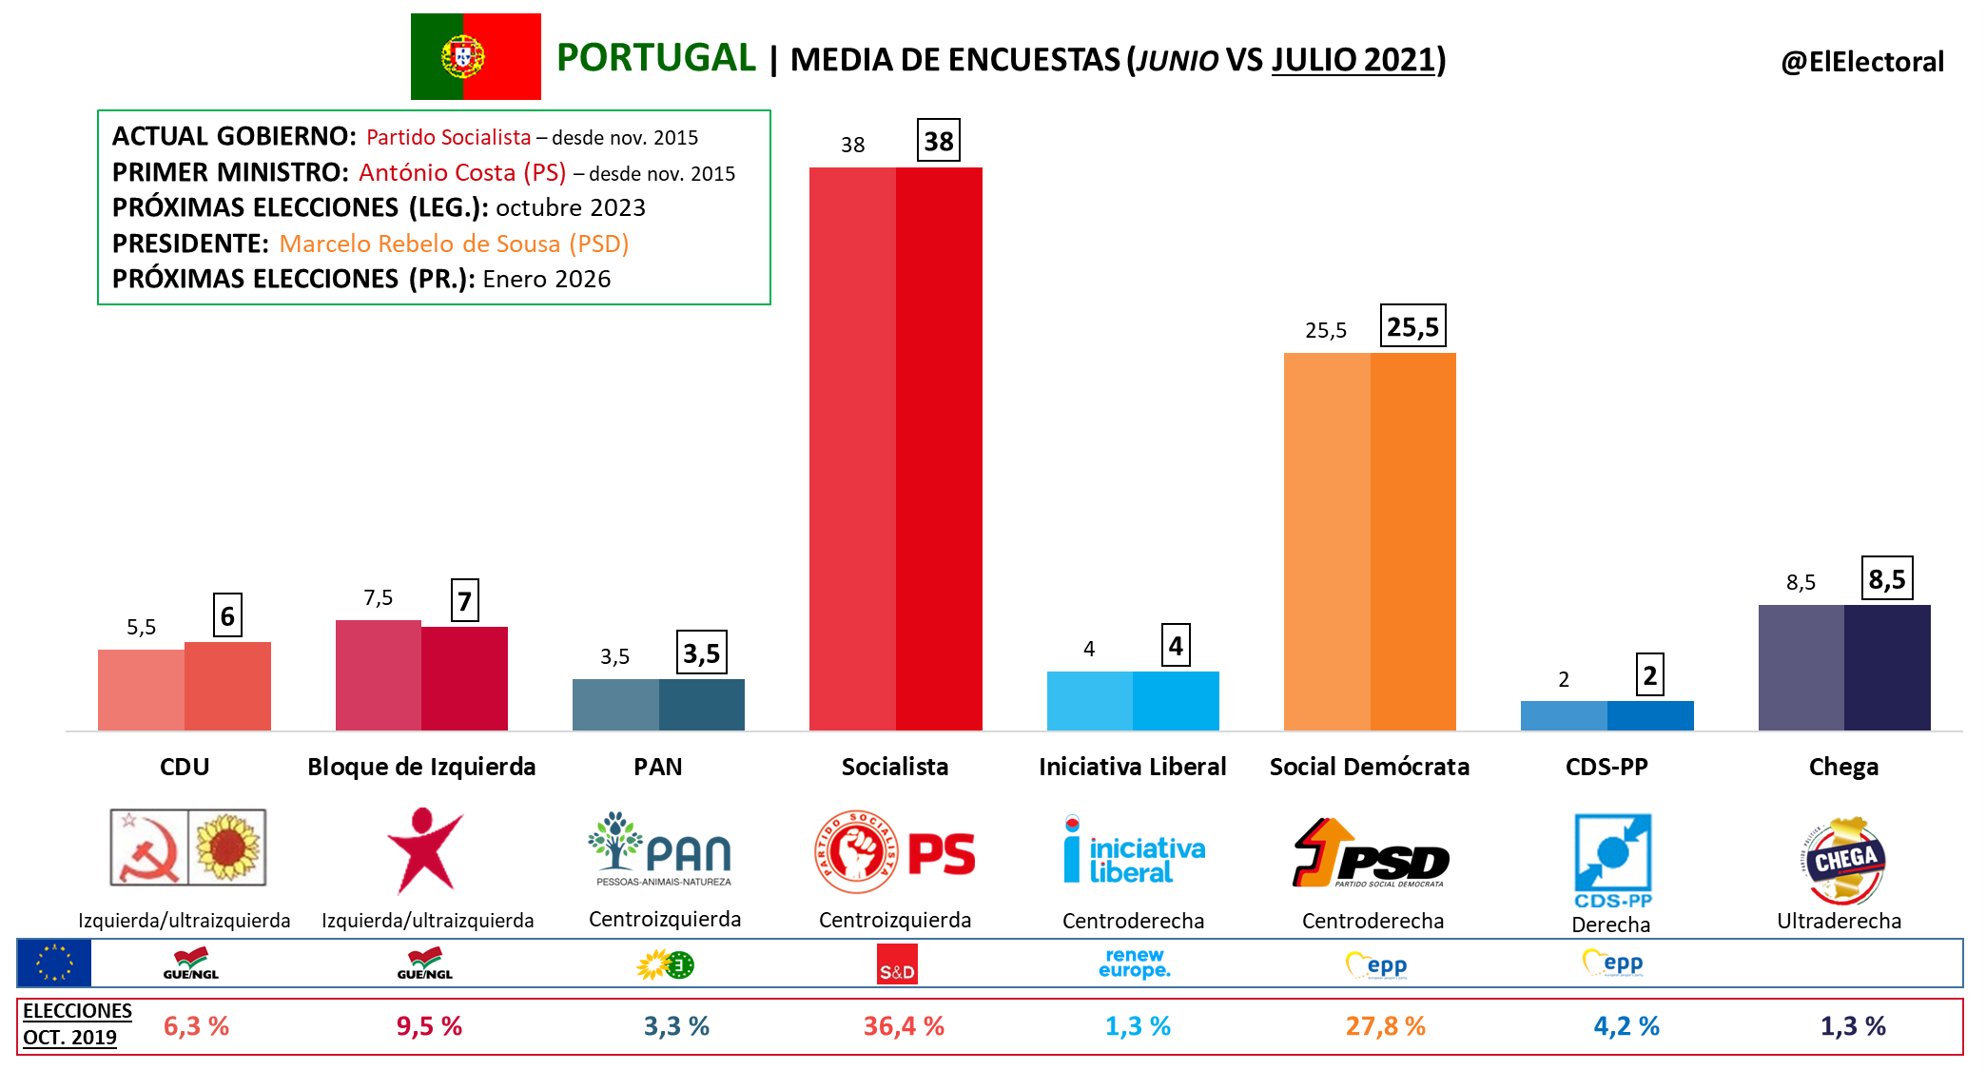 Portugal El Electoral